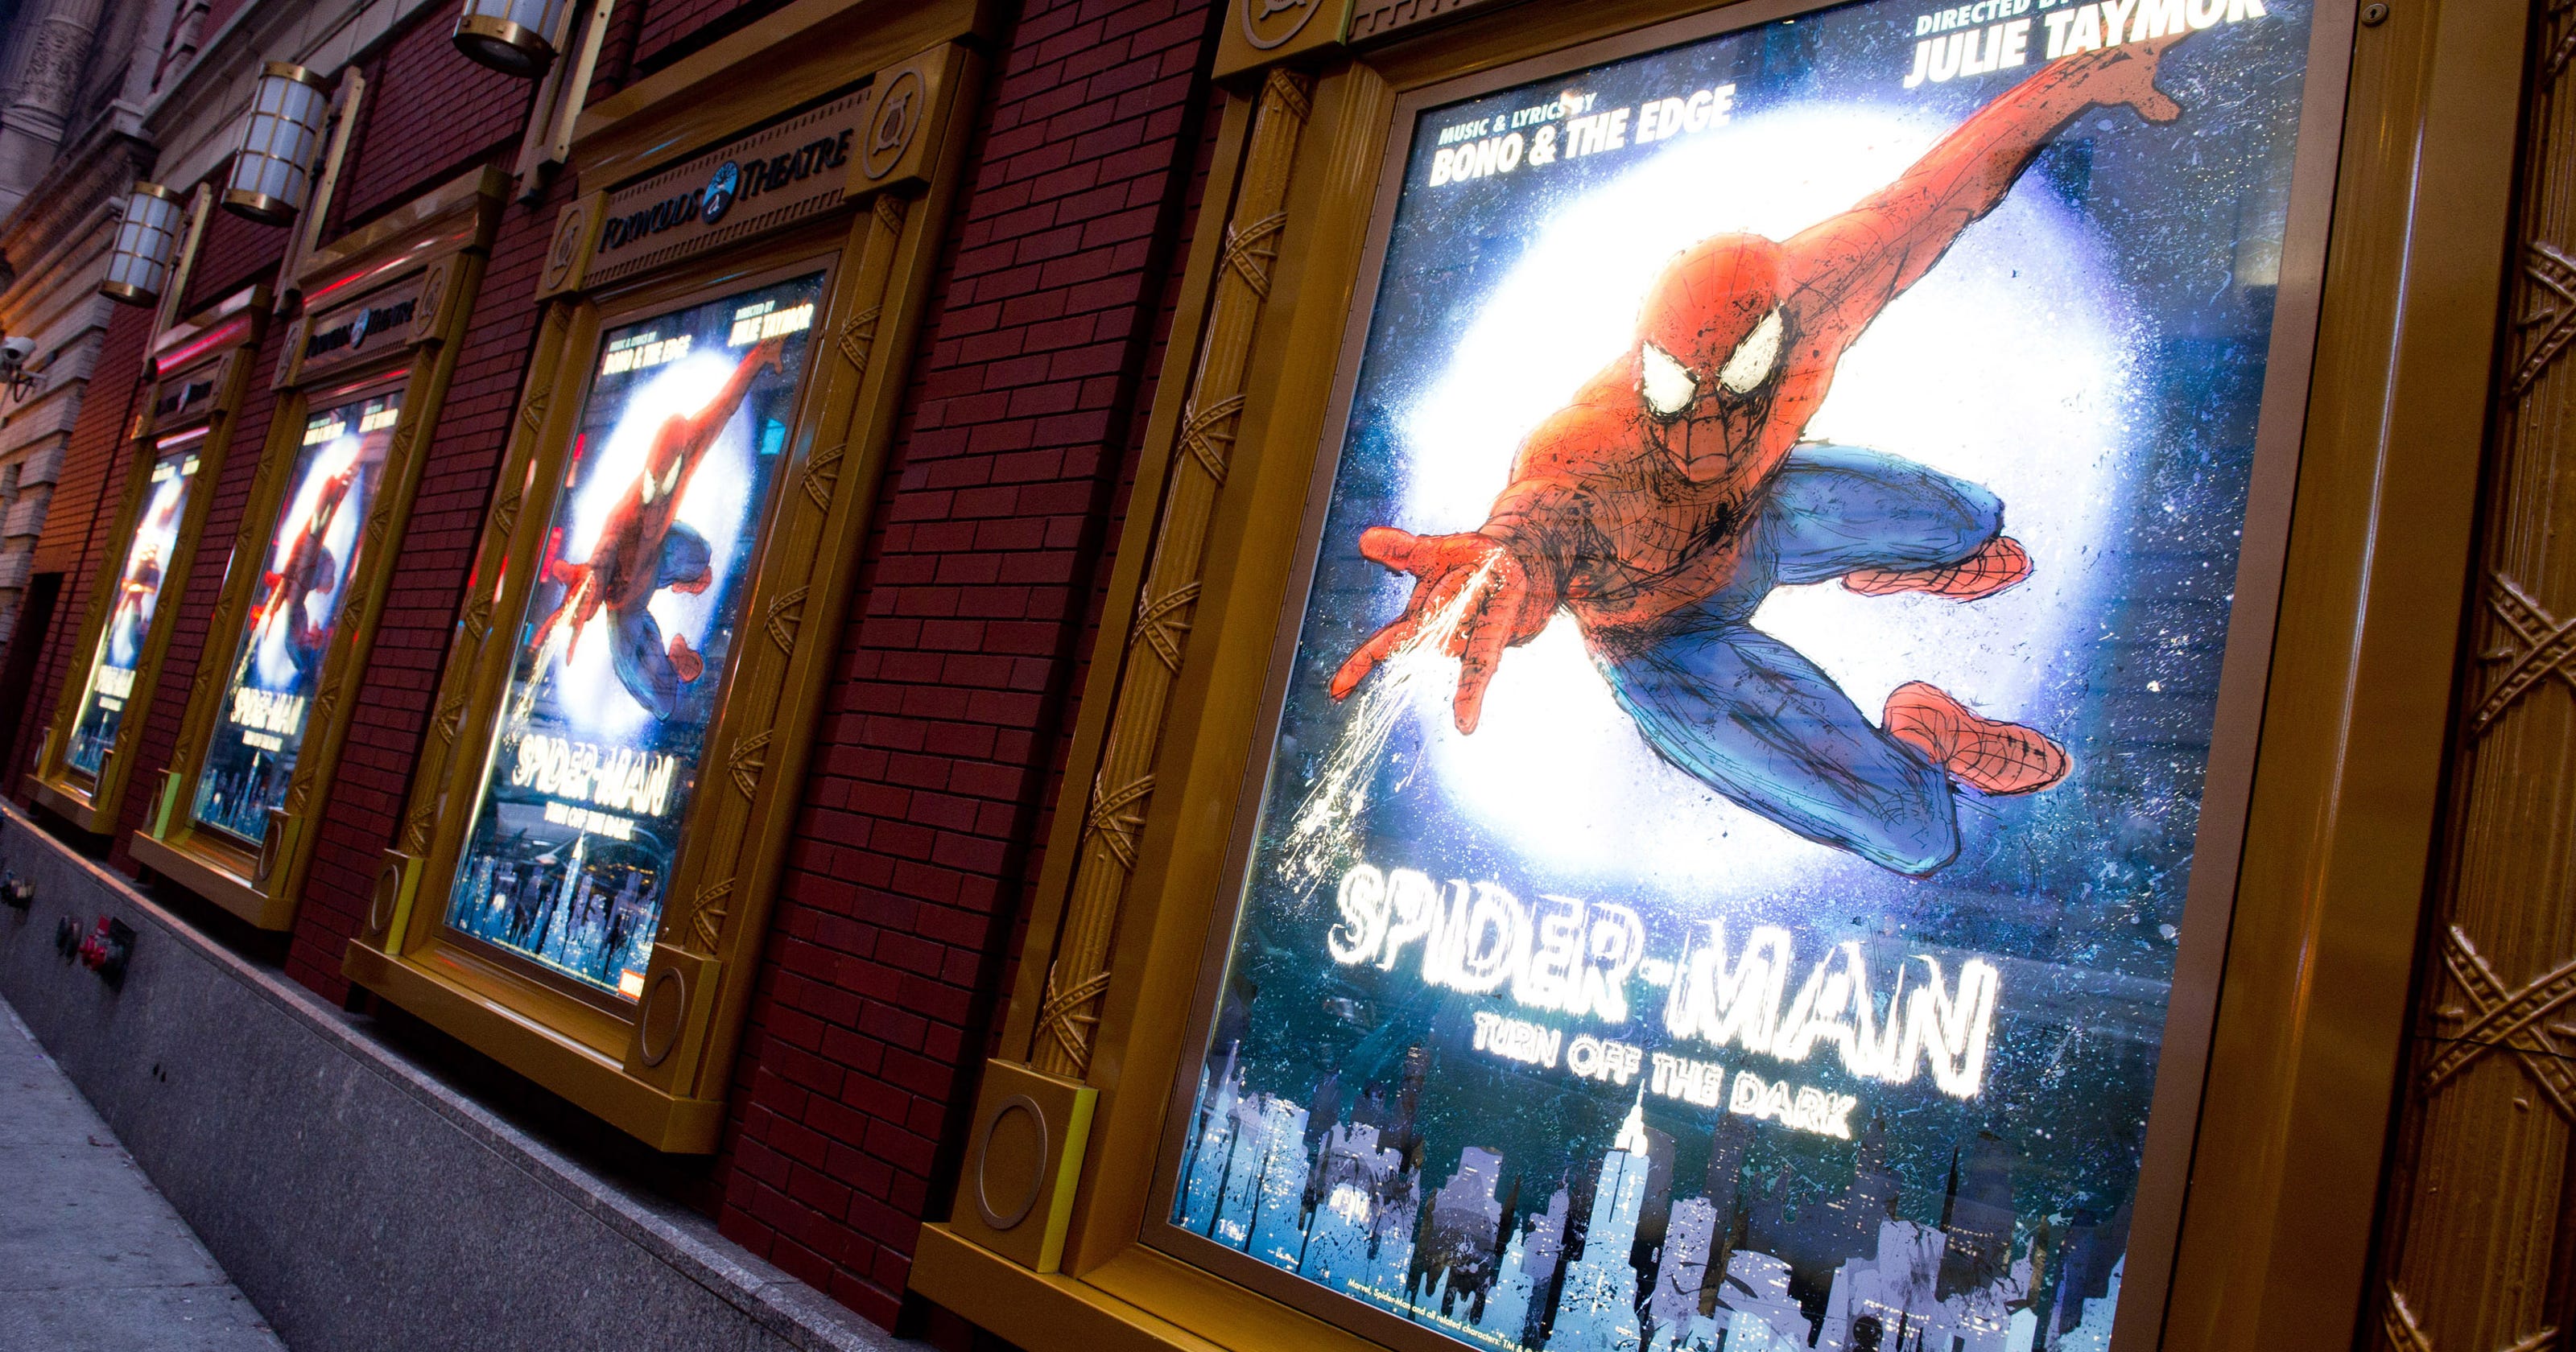 SpiderMan actor injured; Broadway show halted